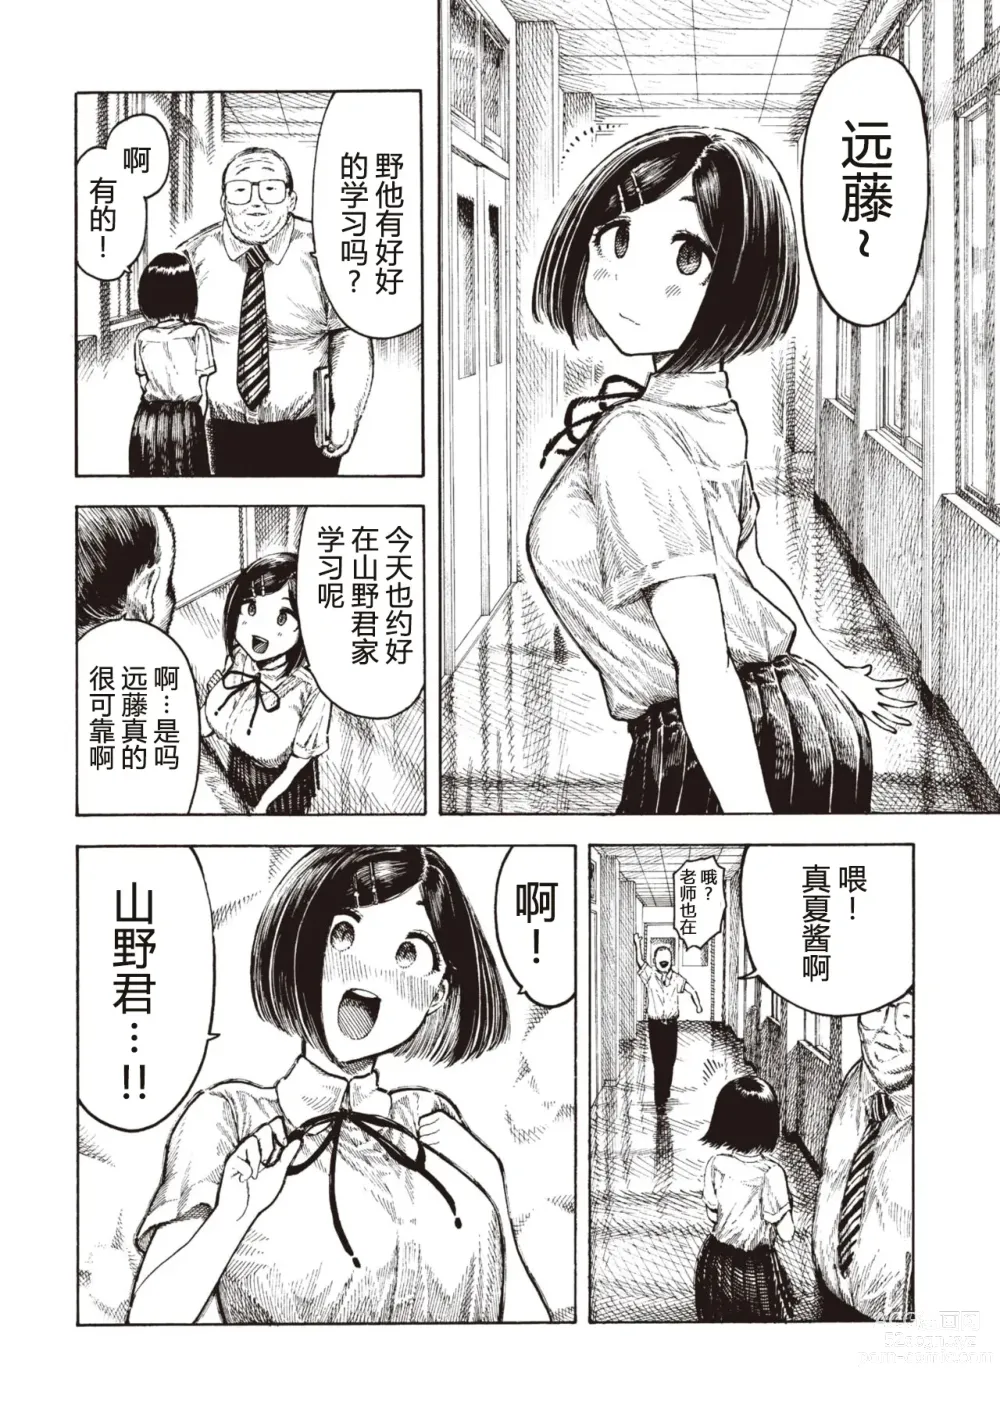 Page 30 of manga Manatsu-chan no Benkyoukai